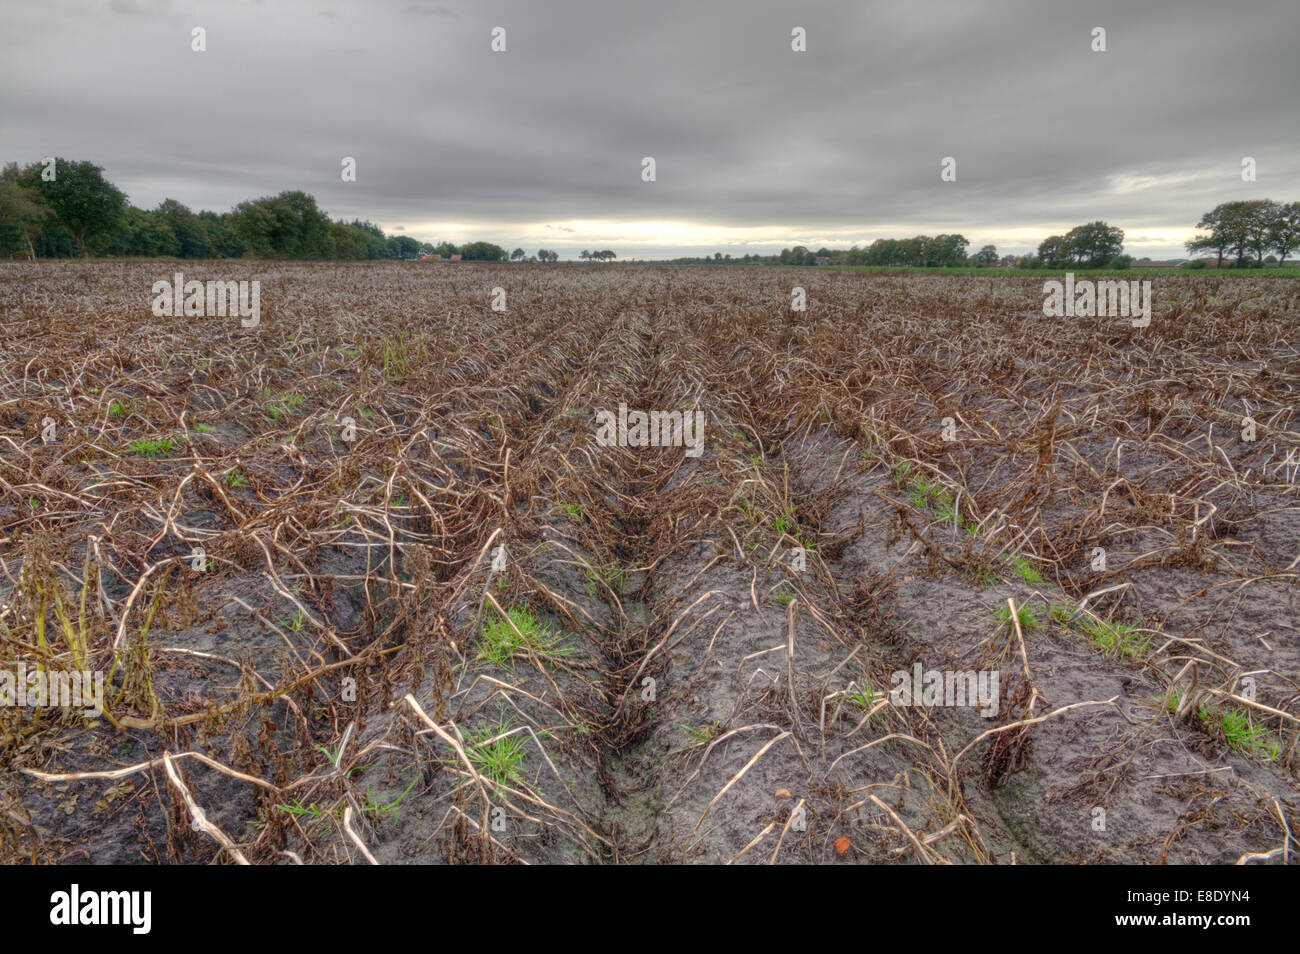 Empty, harvested potato field in autumn Stock Photo